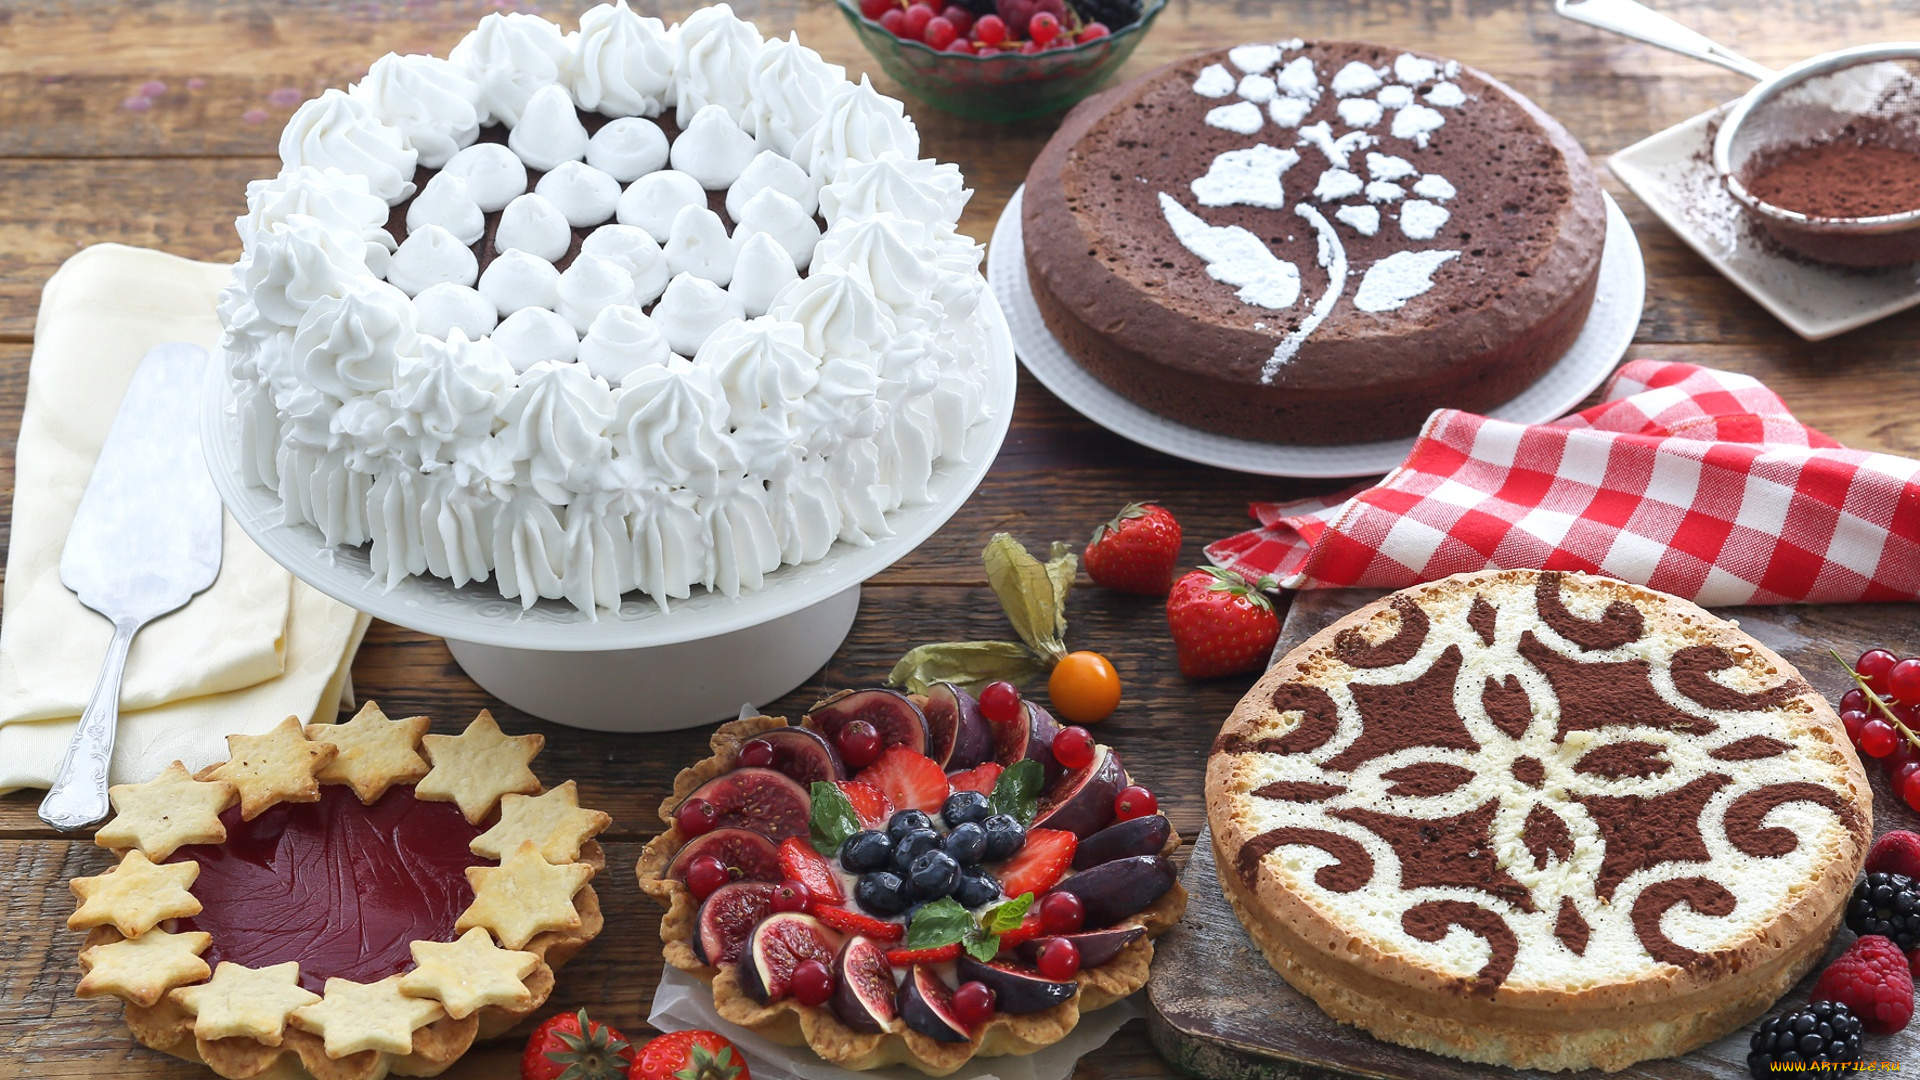 еда, торты, клубника, десерт, sweet, cake, ягоды, сладкое, dessert, выпечка, торт, strawberry, berries, snack, пирожное, крем